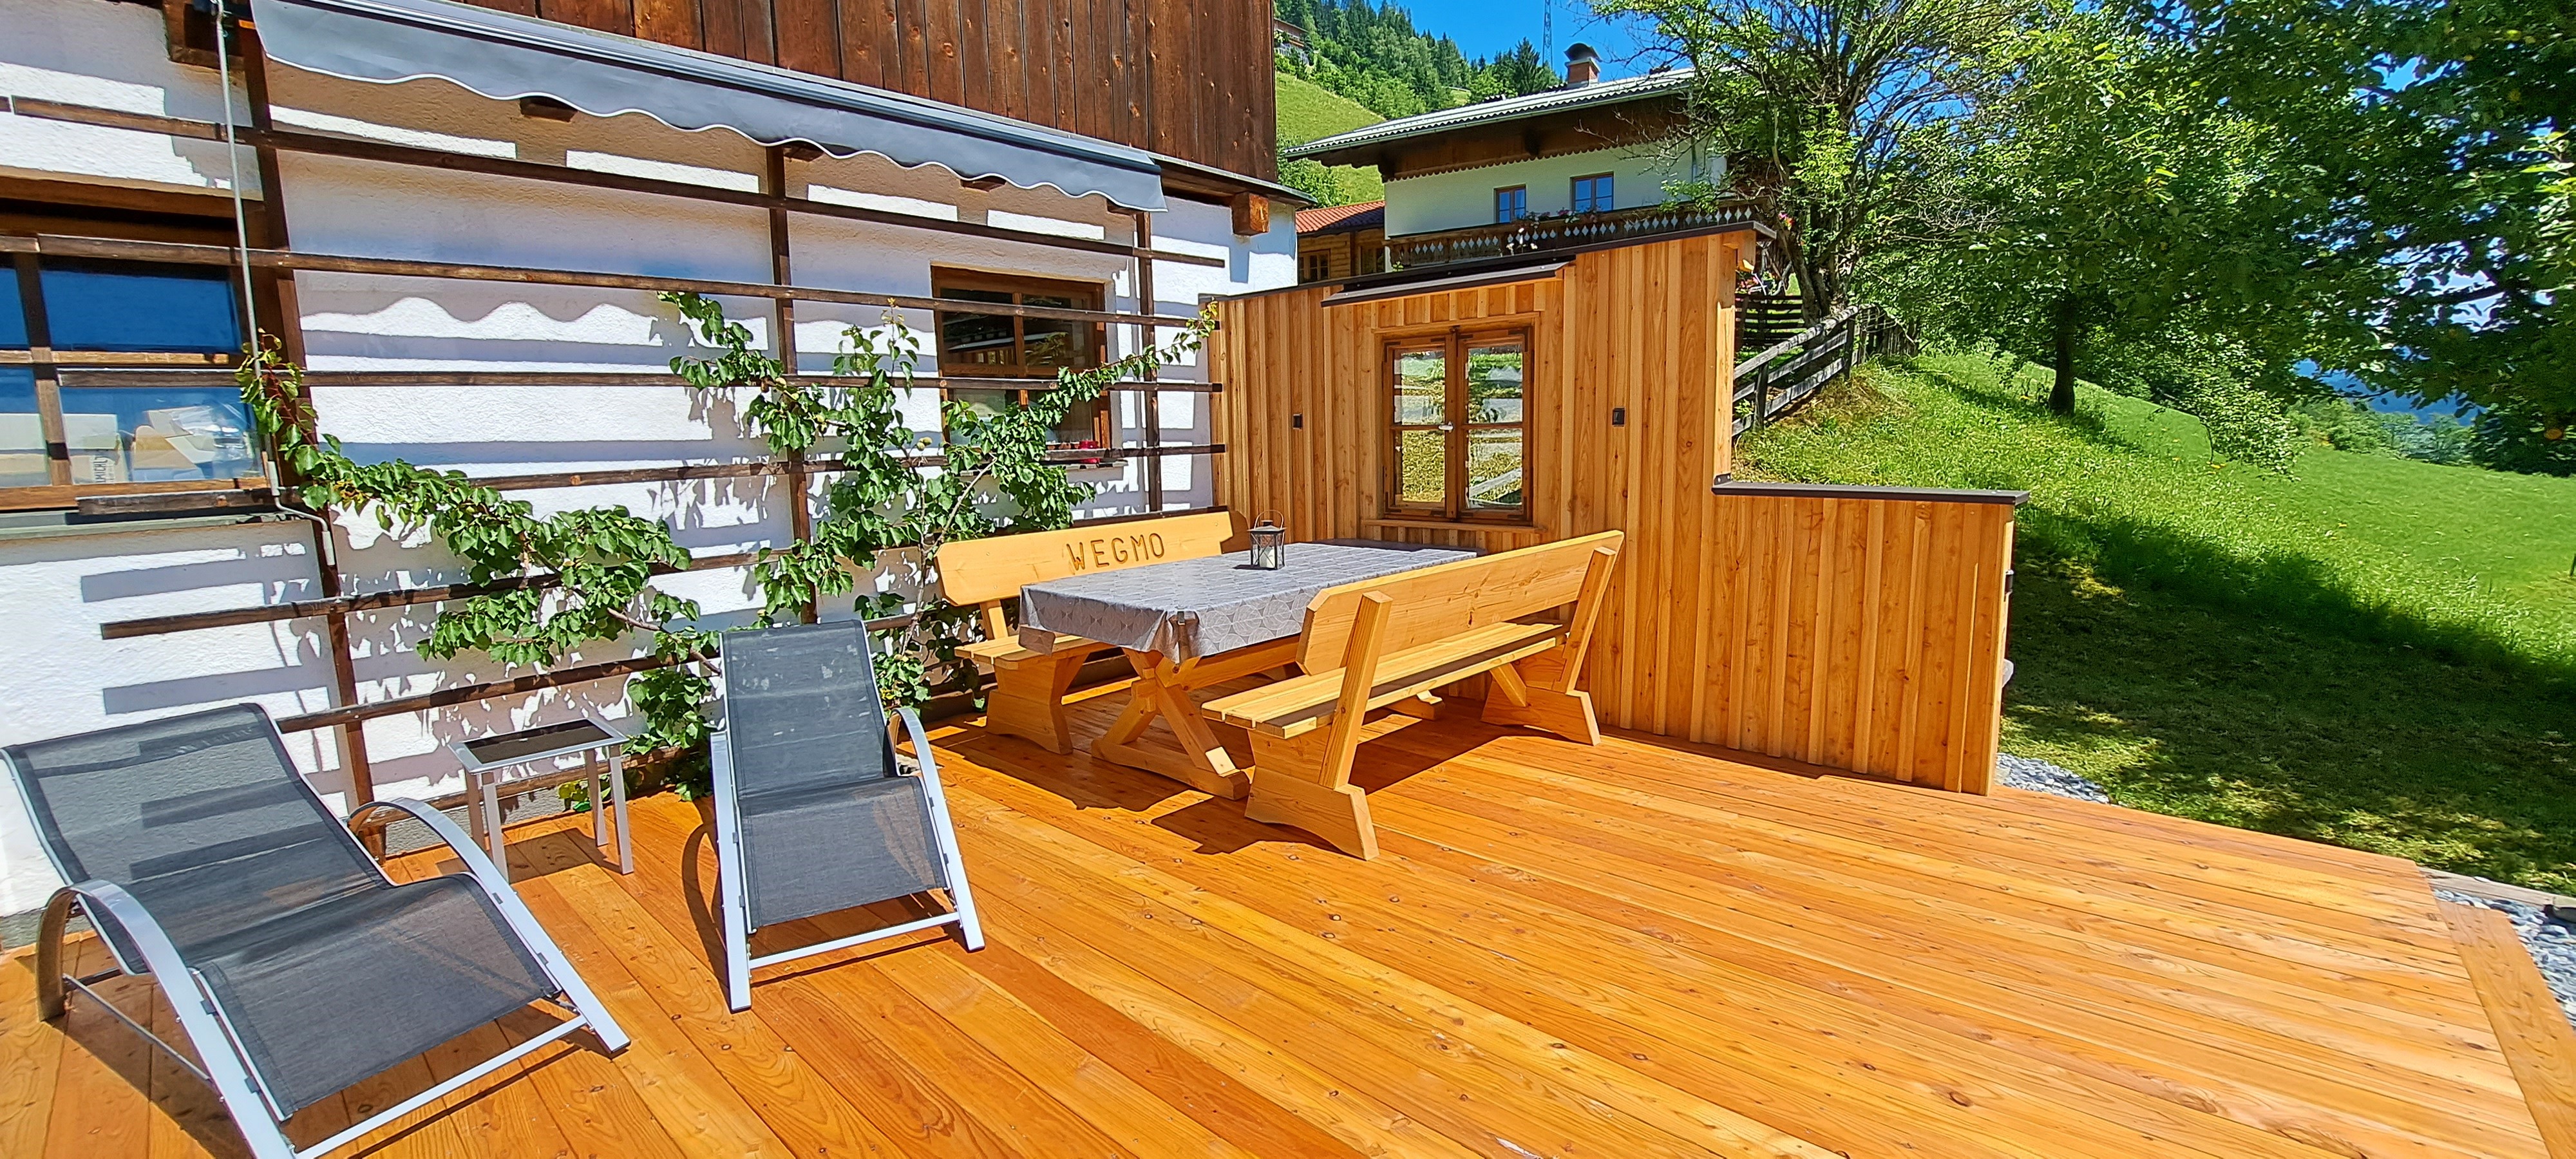 Terrasse mit Holzboden und Liegestühlen